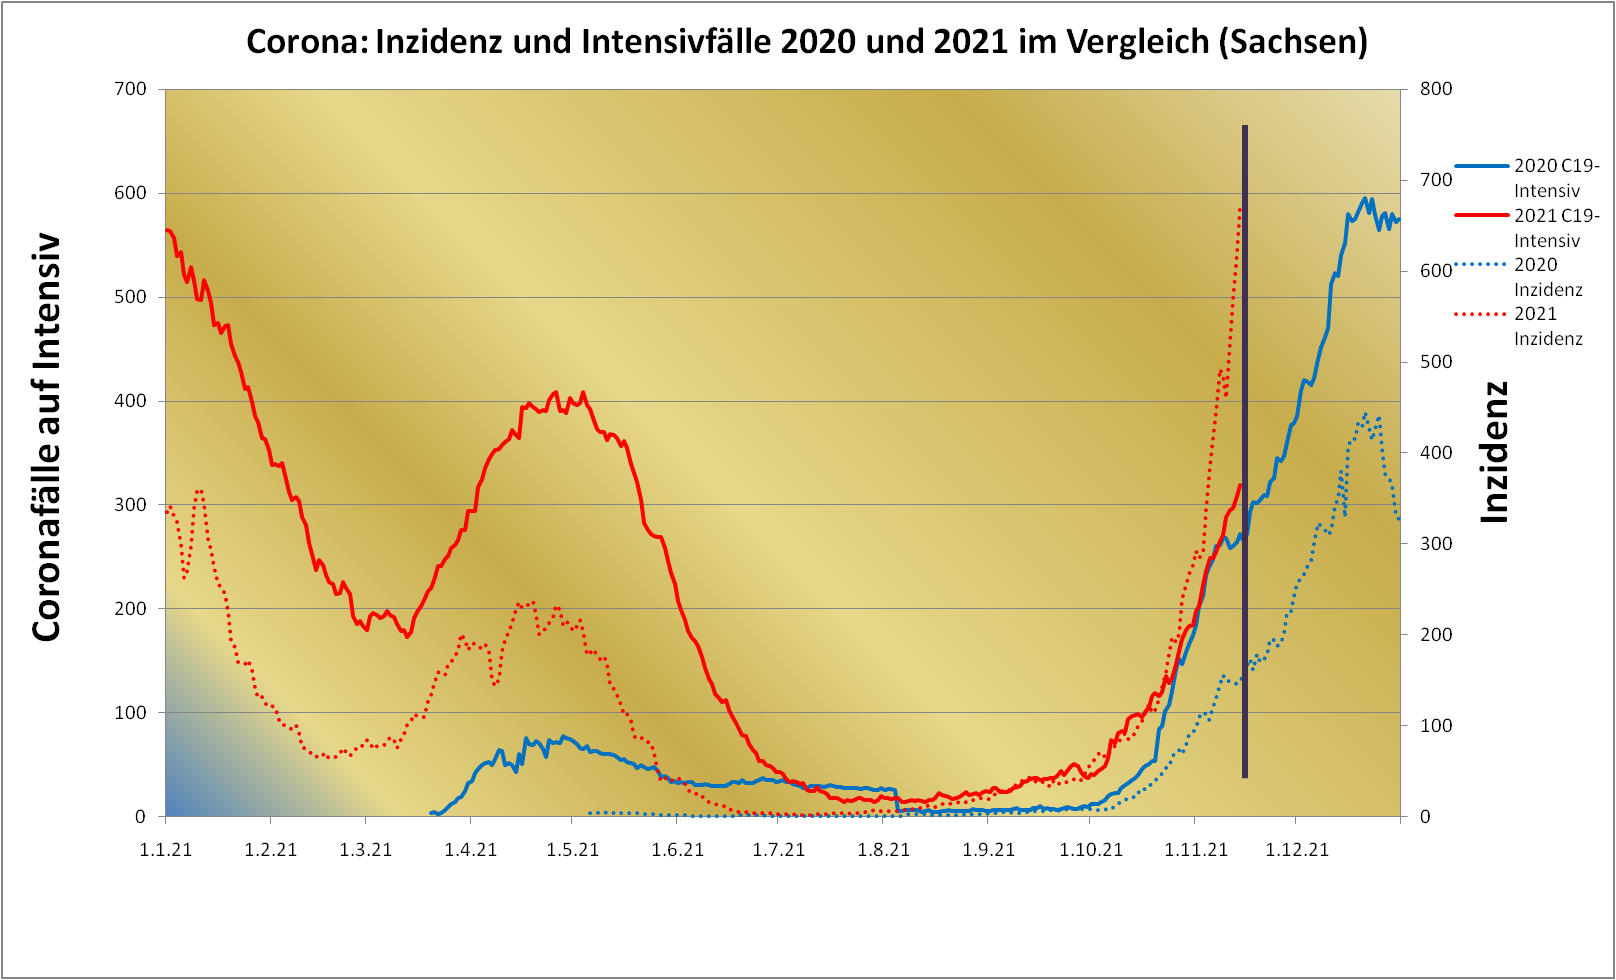 Corona: Inzidenz und Intensivfälle 2020 und 2021 im Vergleich (Sachsen)